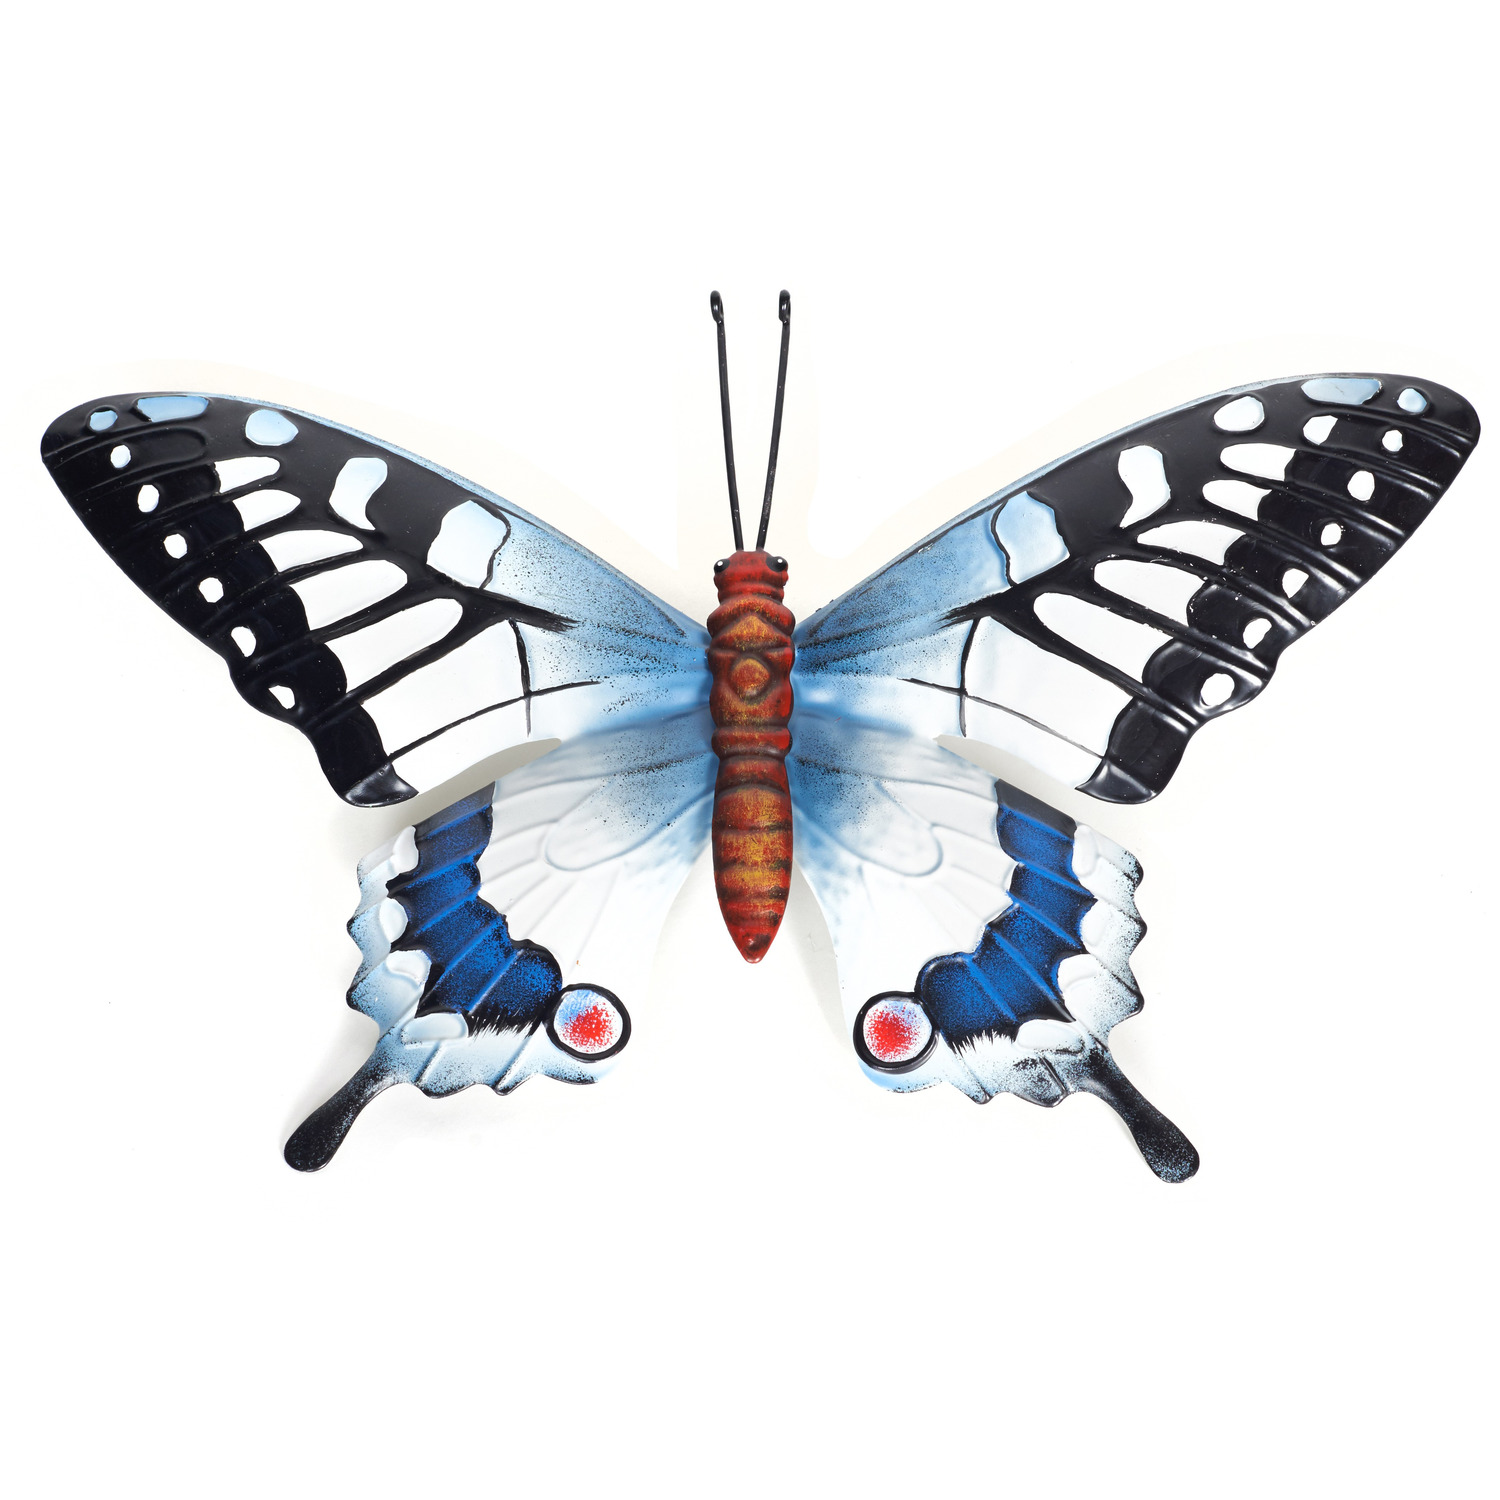 Tuindecoratie vlinder van metaal zwart-blauw 37 cm